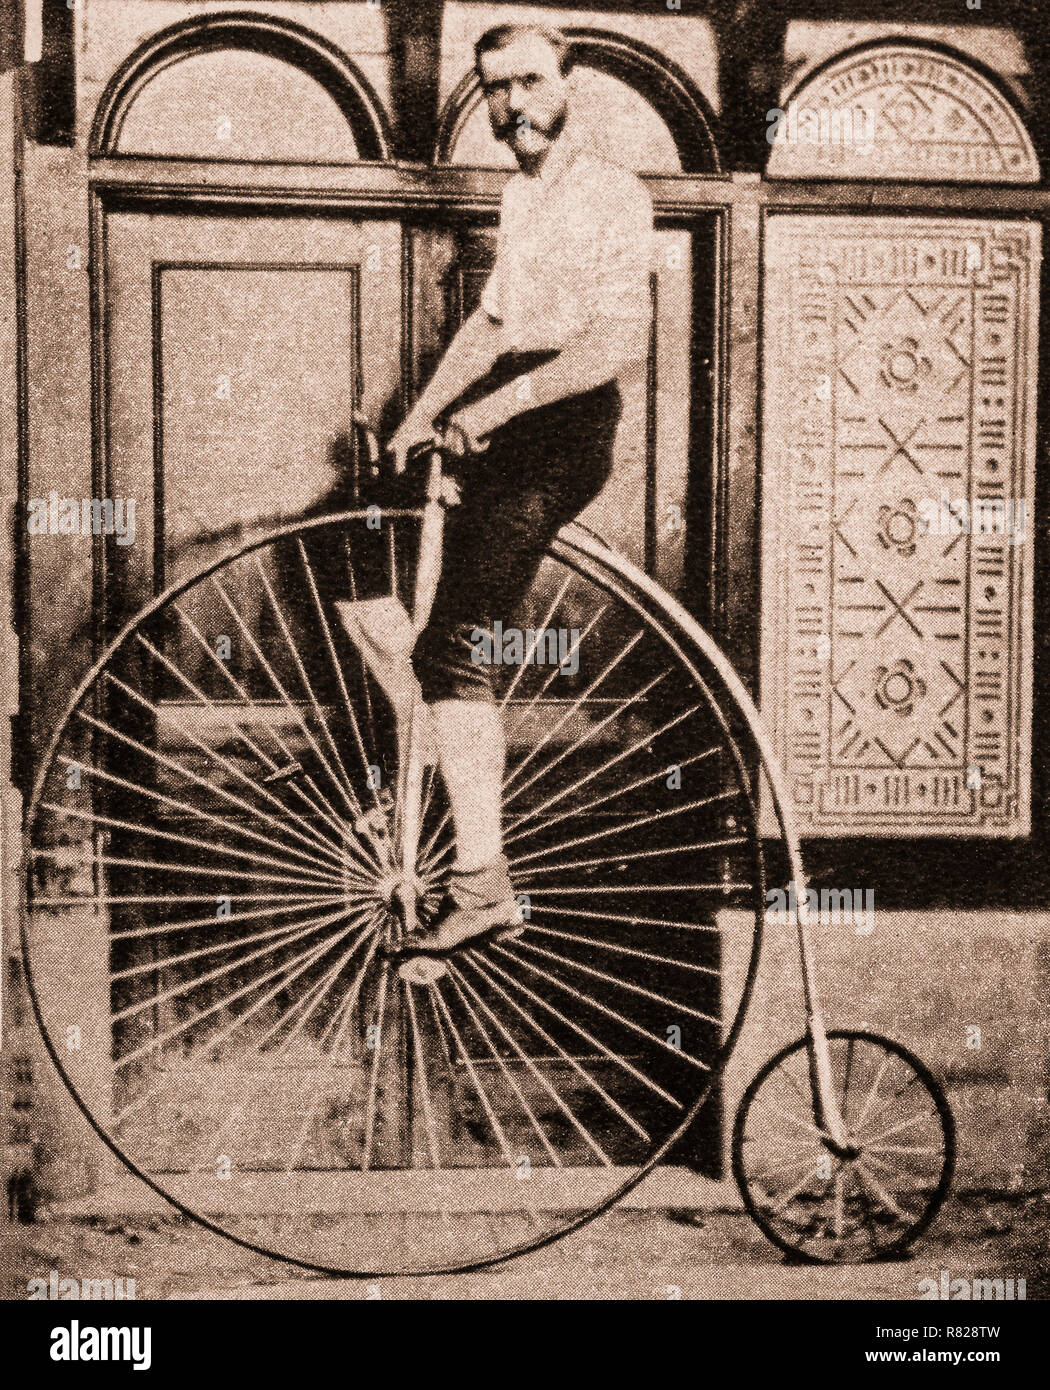 Il Penny Farthing, noto anche come una ruota alta, alta wheeler e ordinario, è stata la prima macchina per essere chiamato un 'bicicletta' popolare negli anni settanta e ottanta la, con la sua grande ruota anteriore fornendo ad alta velocità (a causa di essa che viaggiano a grande distanza per ogni rotazione delle gambe) e comfort (la grande ruota fornisce un maggiore assorbimento degli urti), è diventato obsoleto dal tardo 1880 con lo sviluppo delle moderne biciclette, che ha fornito velocità simile tramite amplificazione a catena treni di ingranaggi e il comfort attraverso i pneumatici e sono stati commercializzati in confronto a penny-farthings come 'sicurezza biciclette Foto Stock